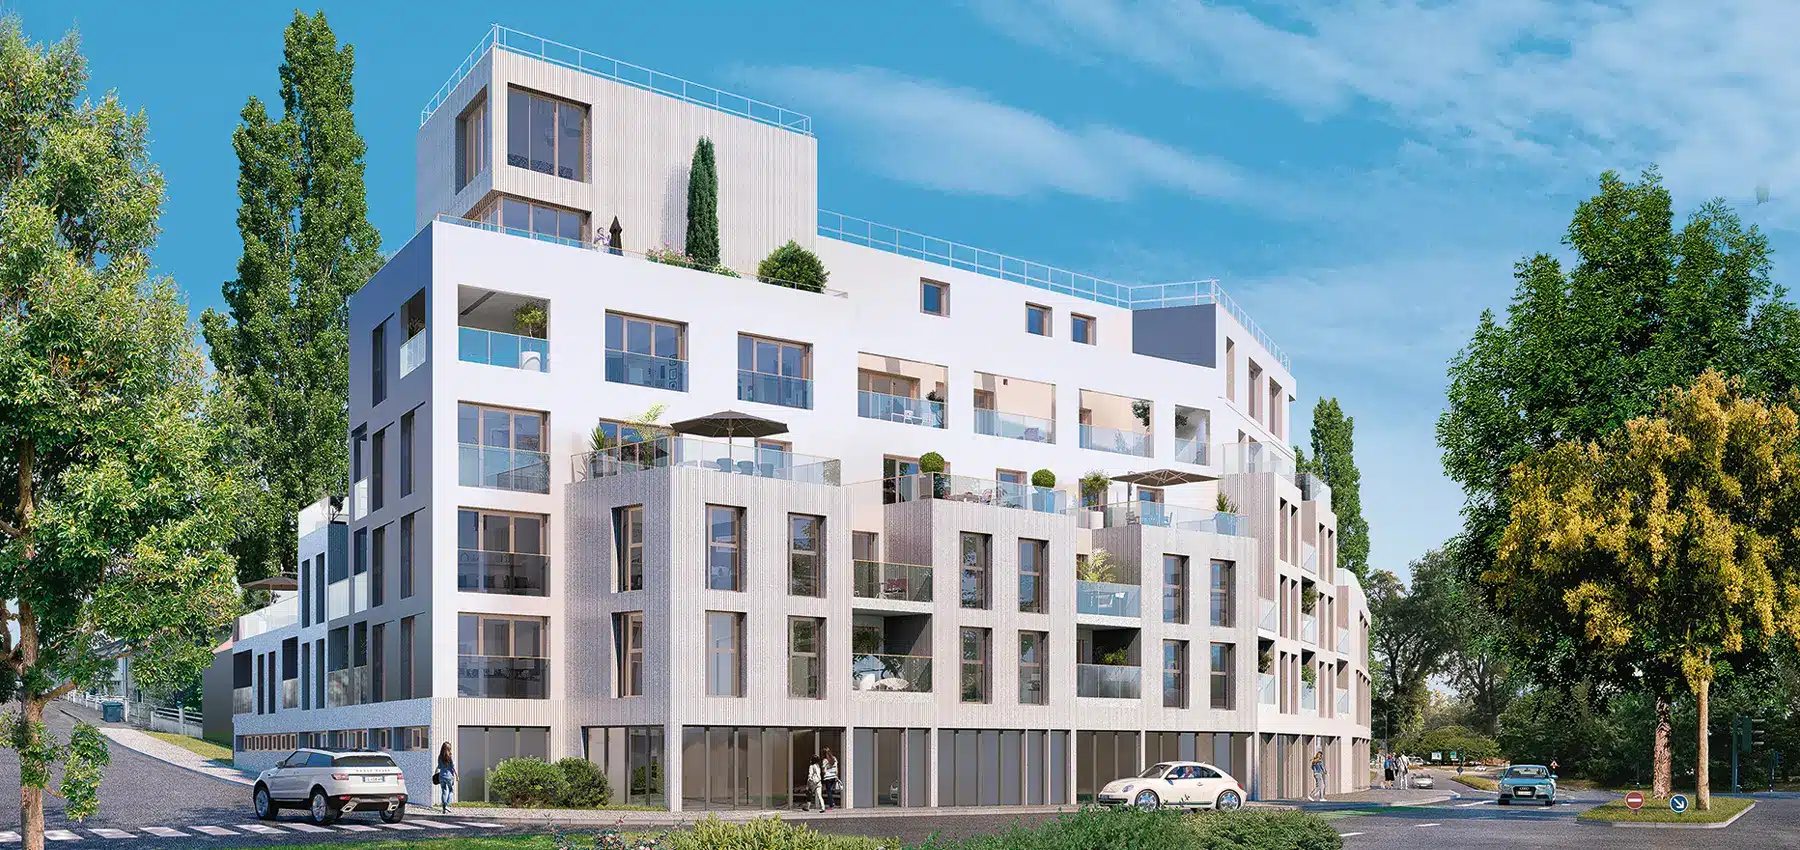 Immobilier neuf à Rennes : quels sont les quartiers où il faut investir ?